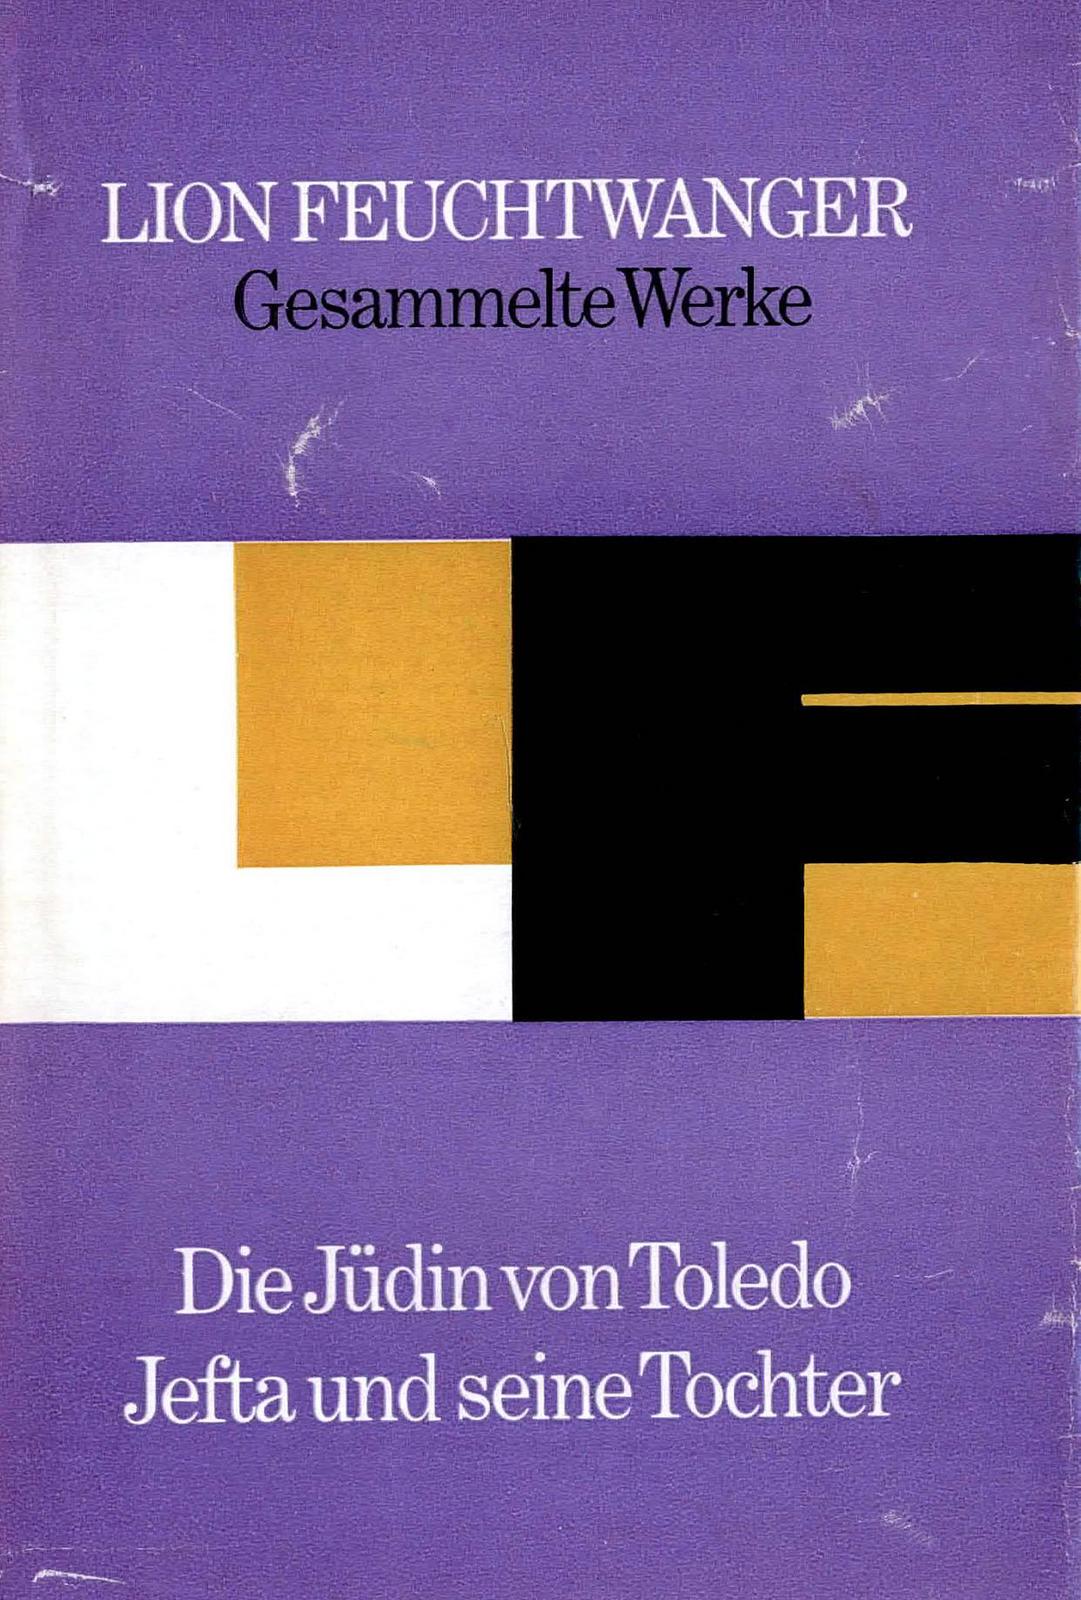 Lion Feuchtwanger: Die Jüdin von Toledo/Jefta und seine Tochter (German language, 1984, Aufbau-Verlag)